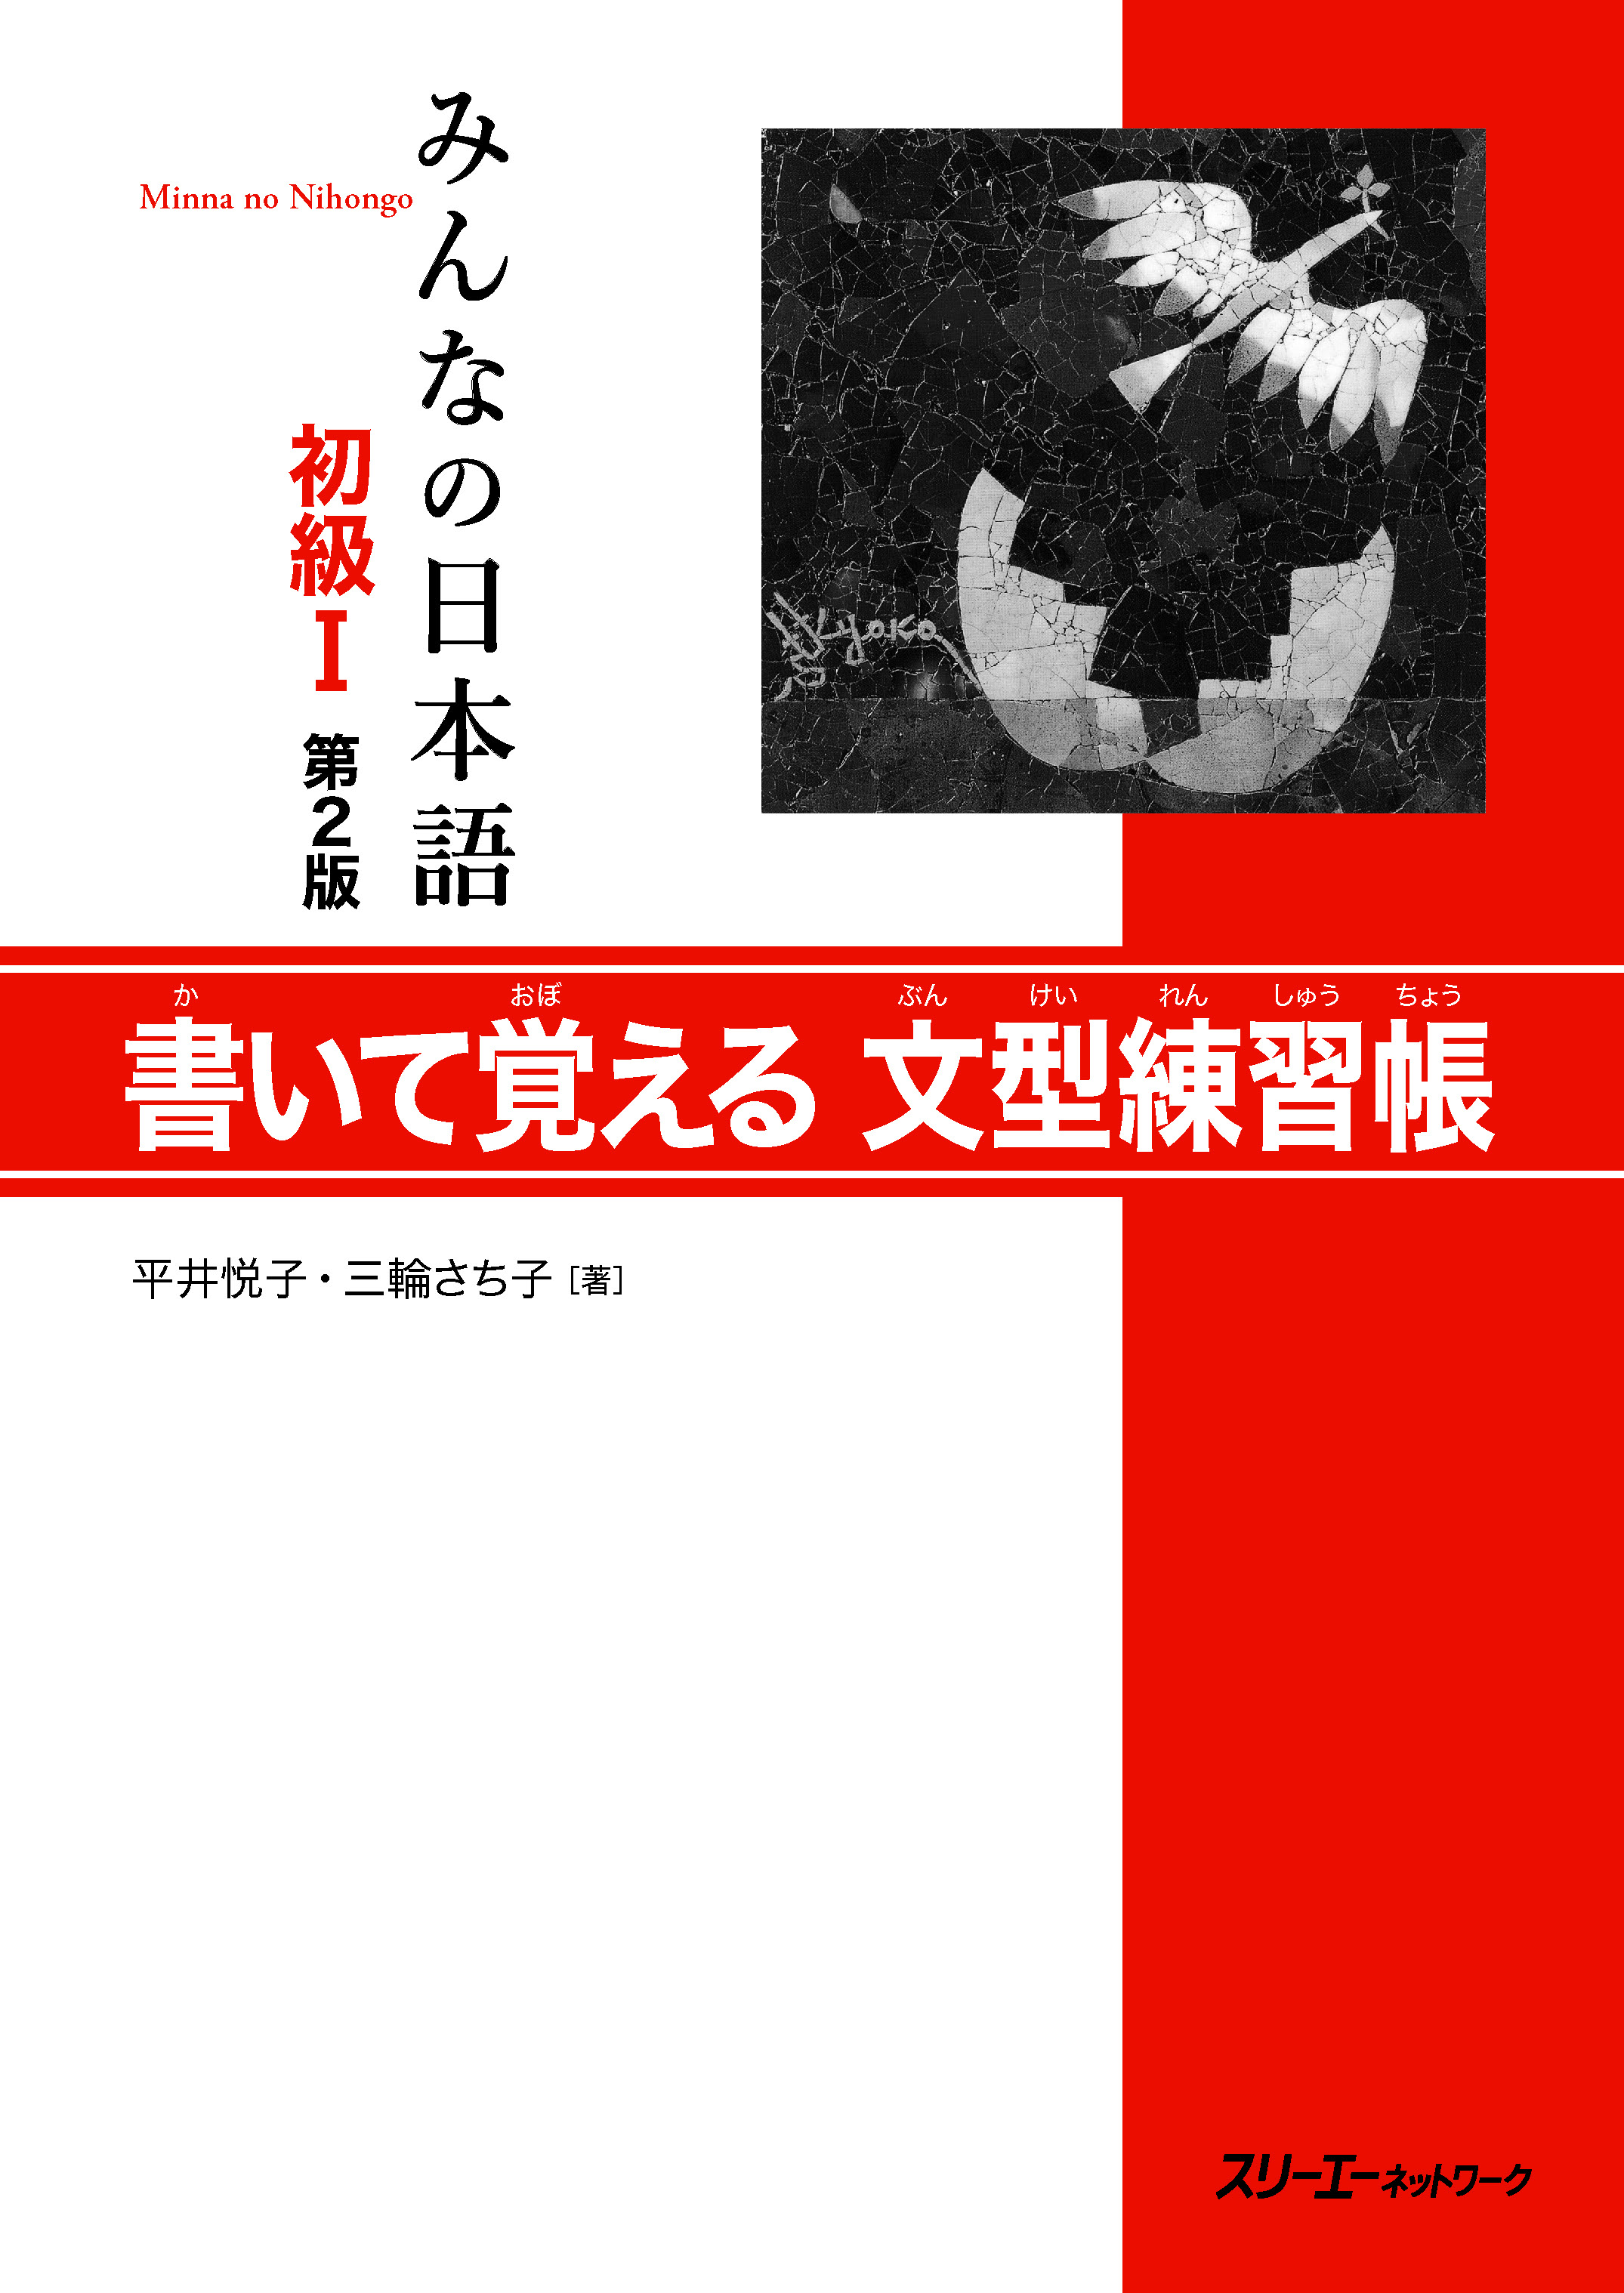 【電子版】販売開始のお知らせ 『みんなの日本語 初級 書いて覚える文型練習帳』『同 漢字練習帳』『同 やさしい作文』